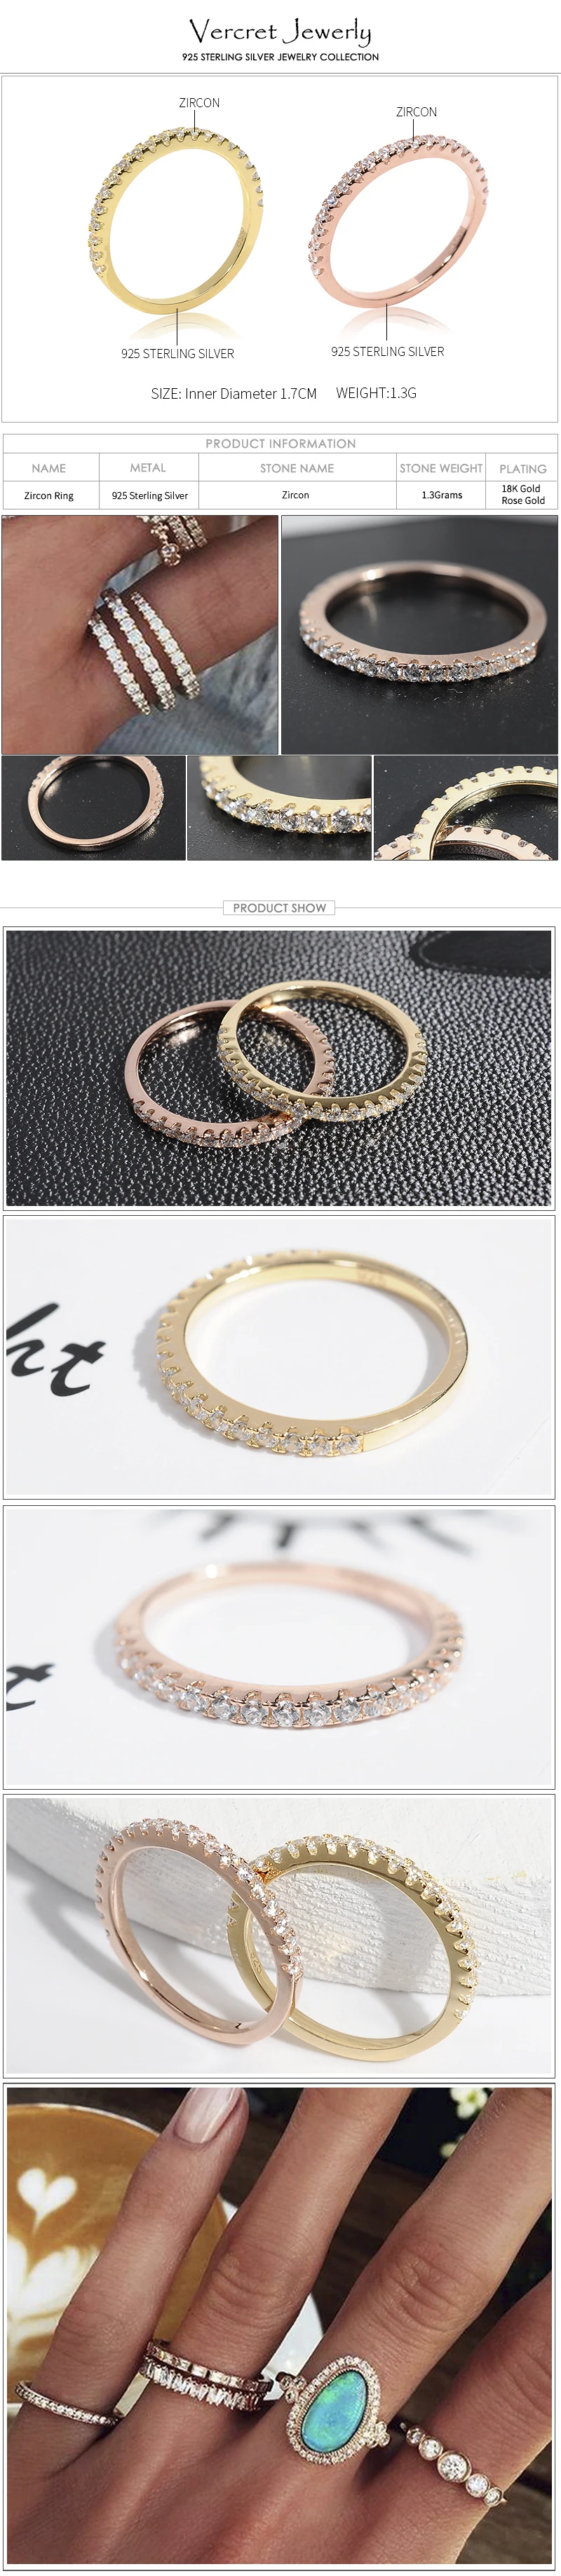 Vercret Стерлинговое серебряное кольцо из циркона для женщин розовое золото кольцо ювелирные изделия подарок